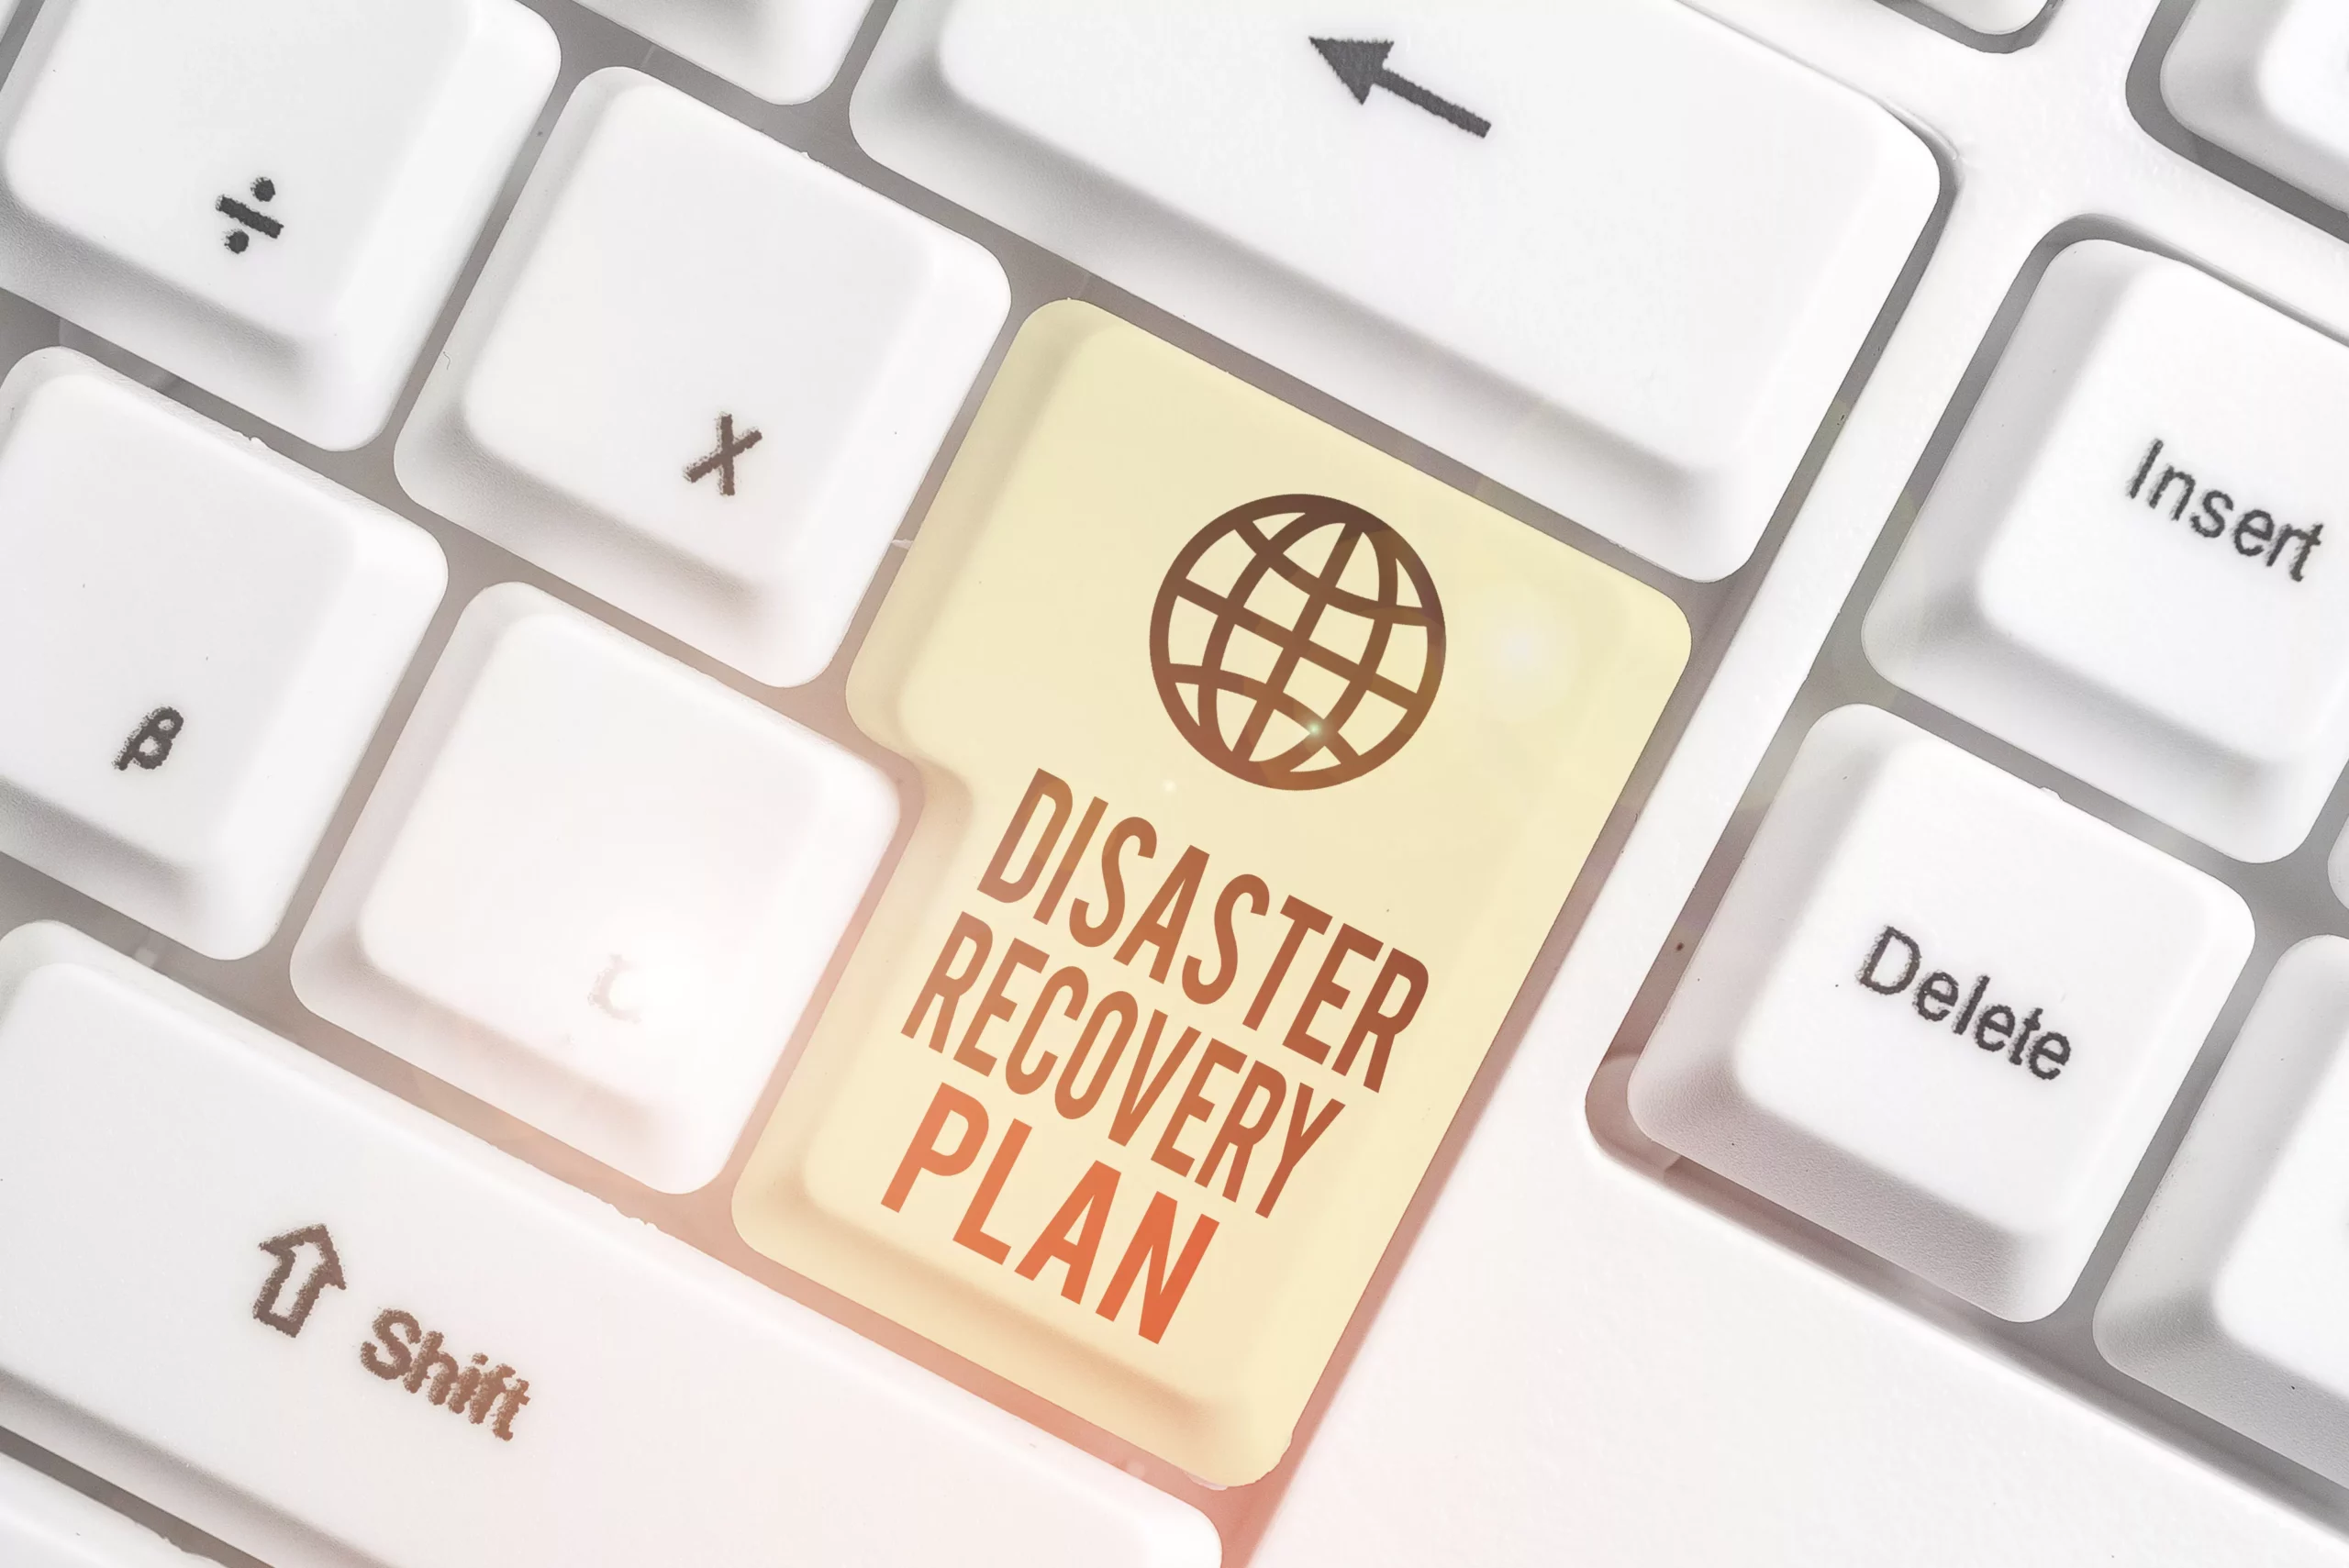 Teclado blanco con tecla disaster recovery plan. BCDR y los principales desafíos para asegurar la continuidad del negocio